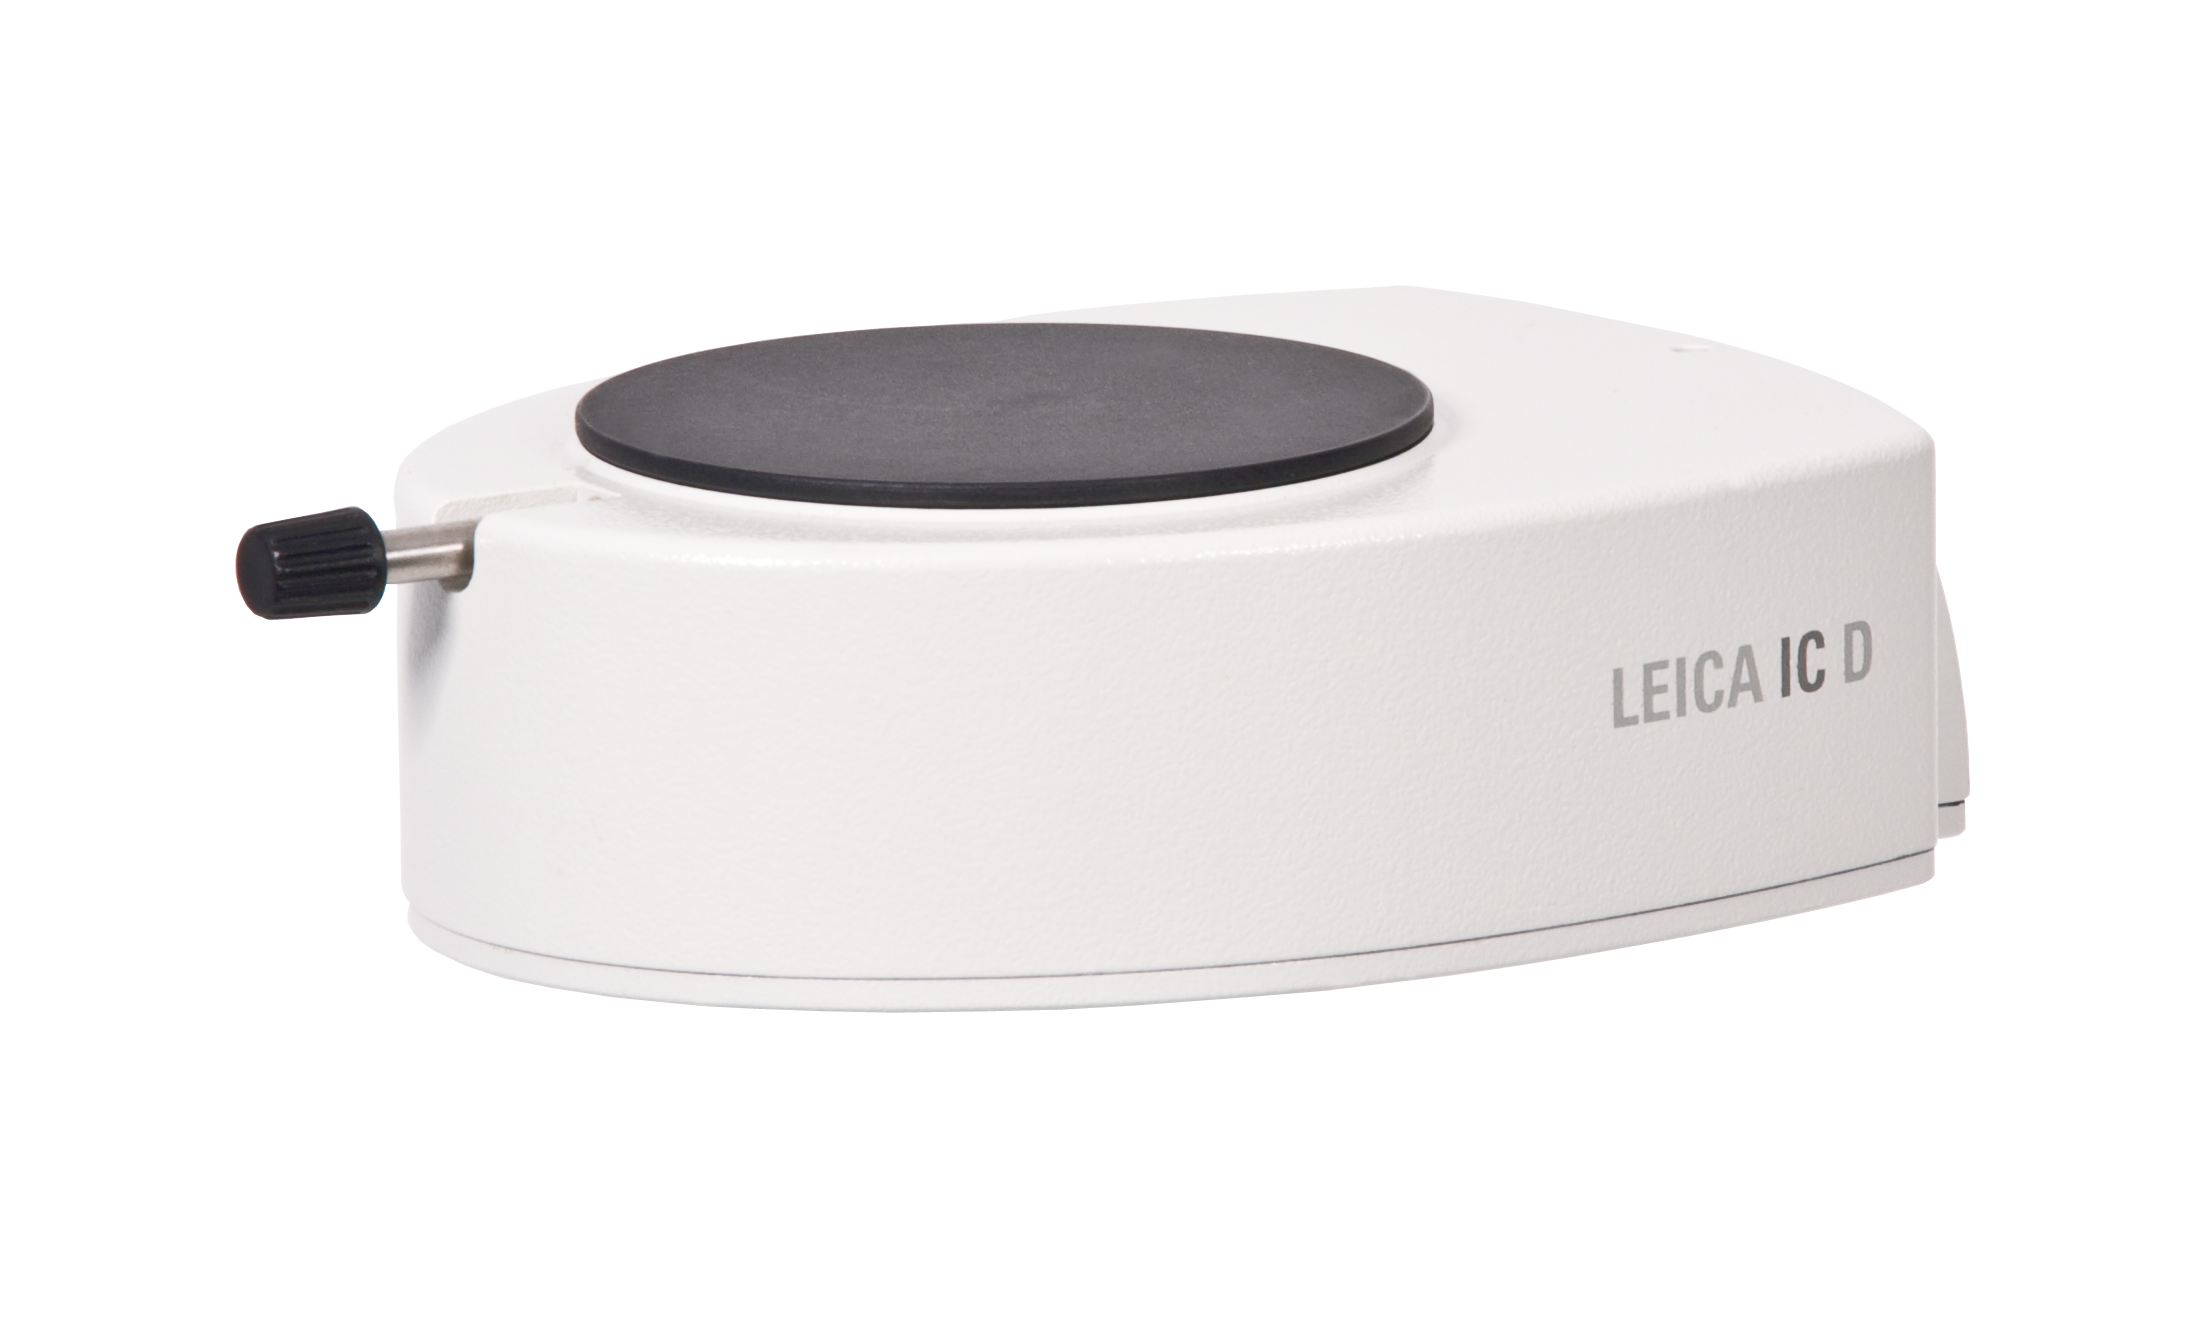 A Leica IC D é uma solução poderosa, ergonômica e econômica para micrografia digital profissional.